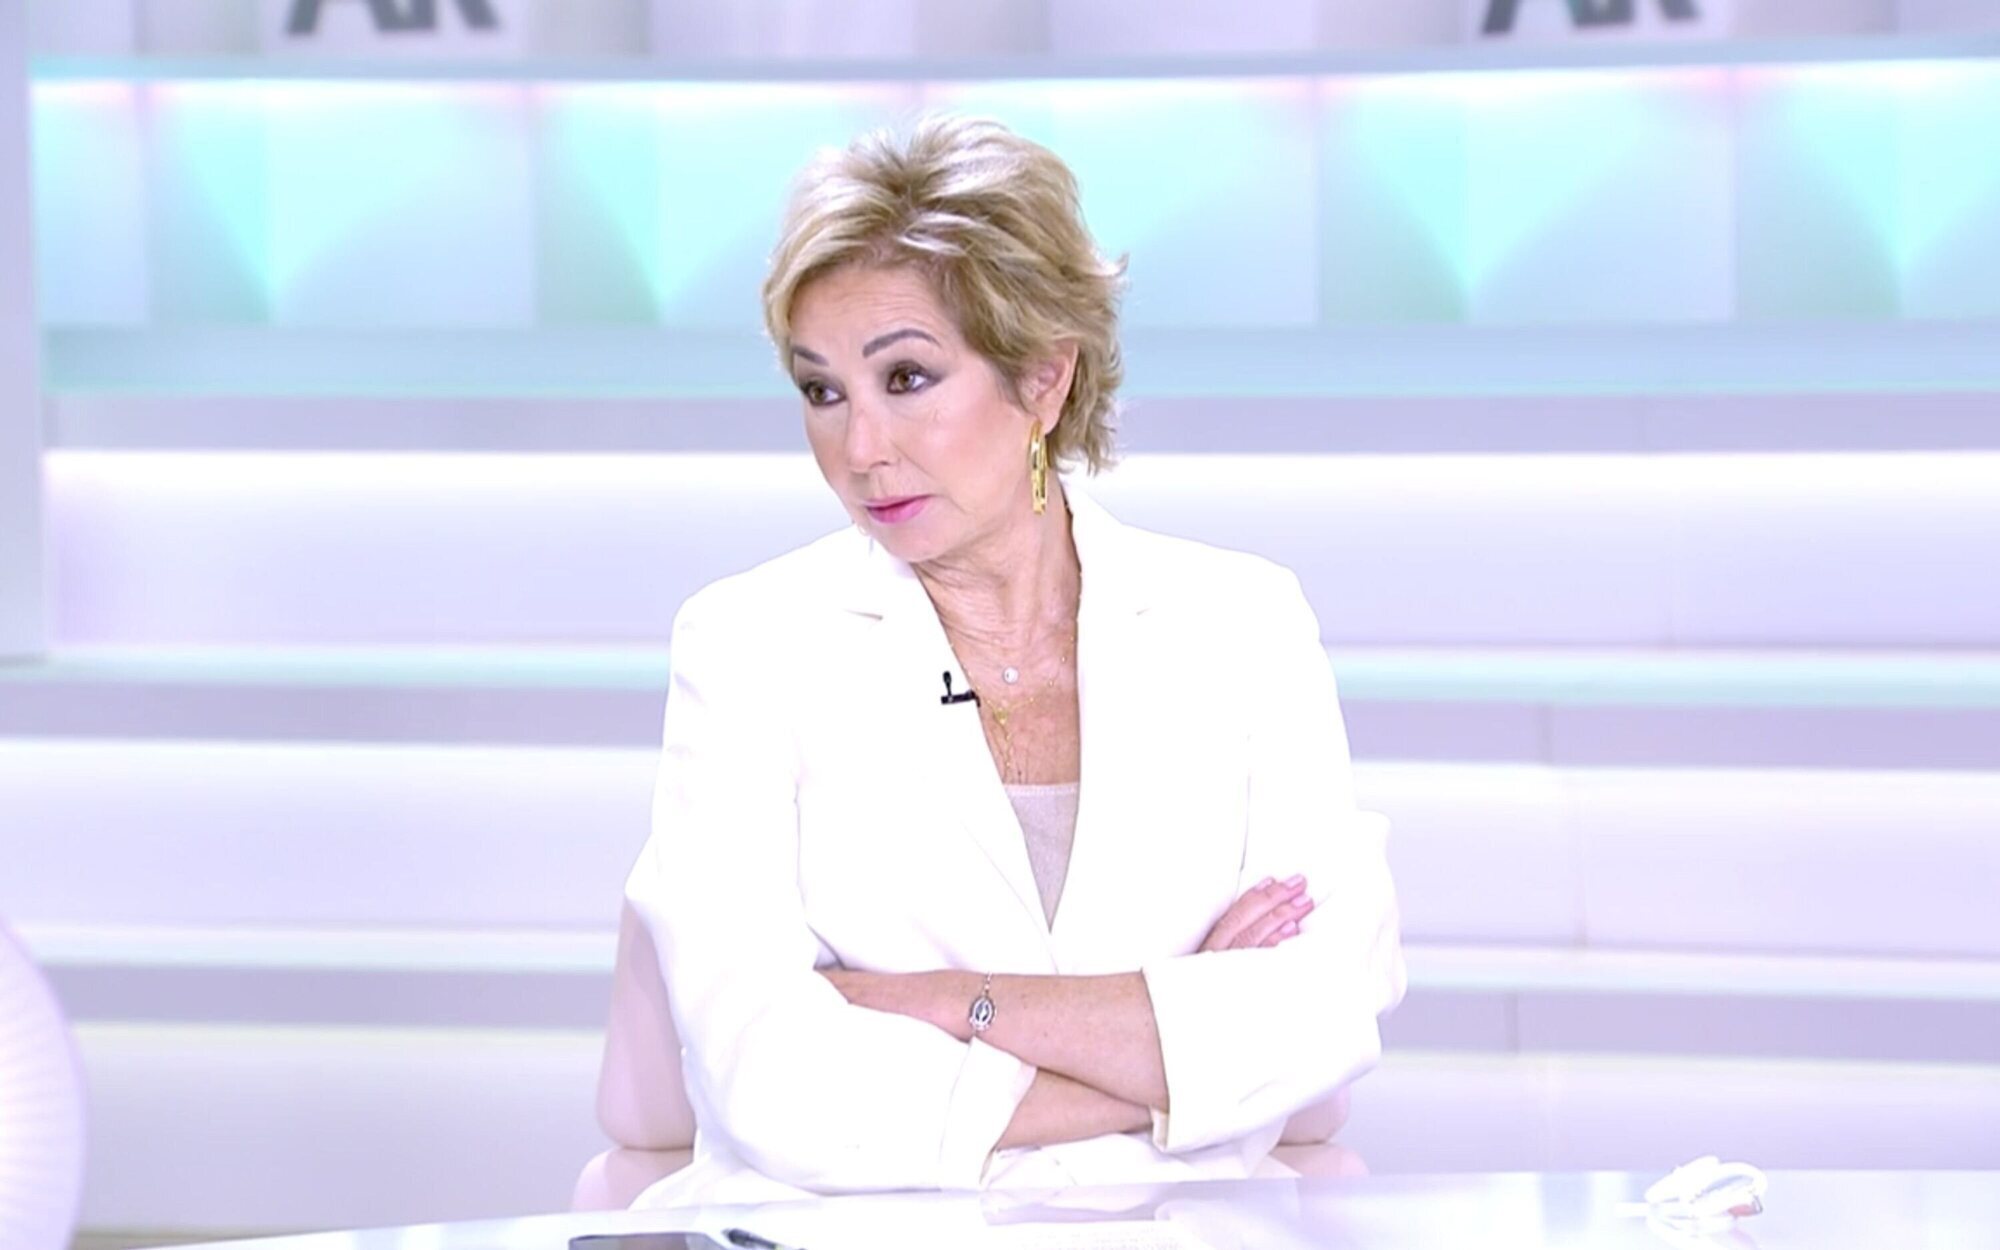 Ana Rosa Quintana, cabreada con la parodia de la Virgen del Rocío en TV3: "No me hace ni puta gracia"